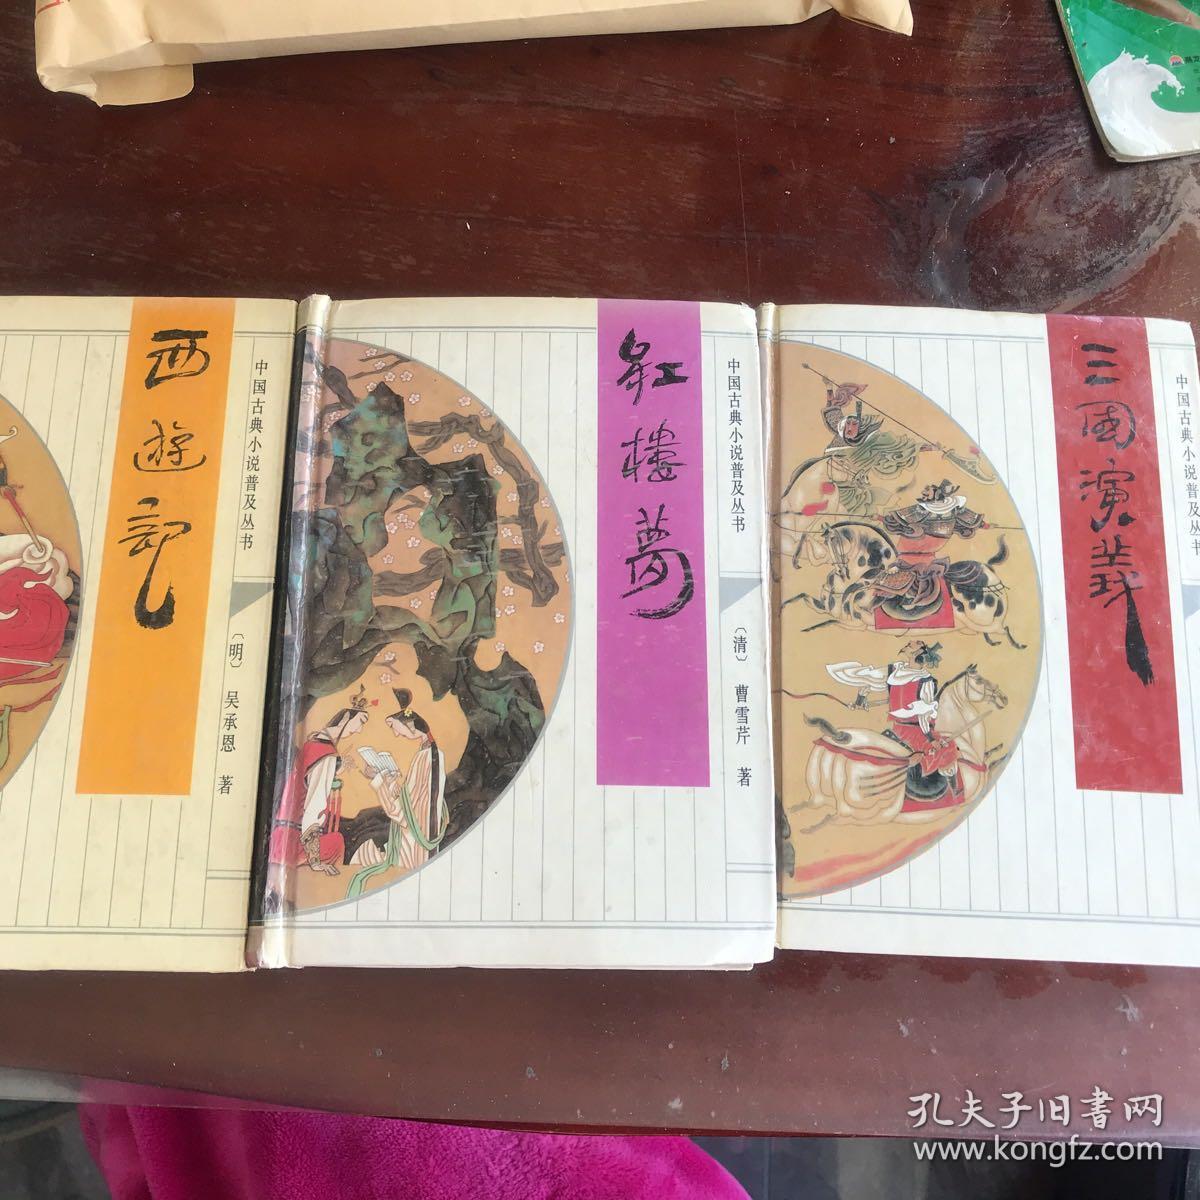 《西游记》《红楼梦》《三国演义》  精装三本 
齐鲁书社出版